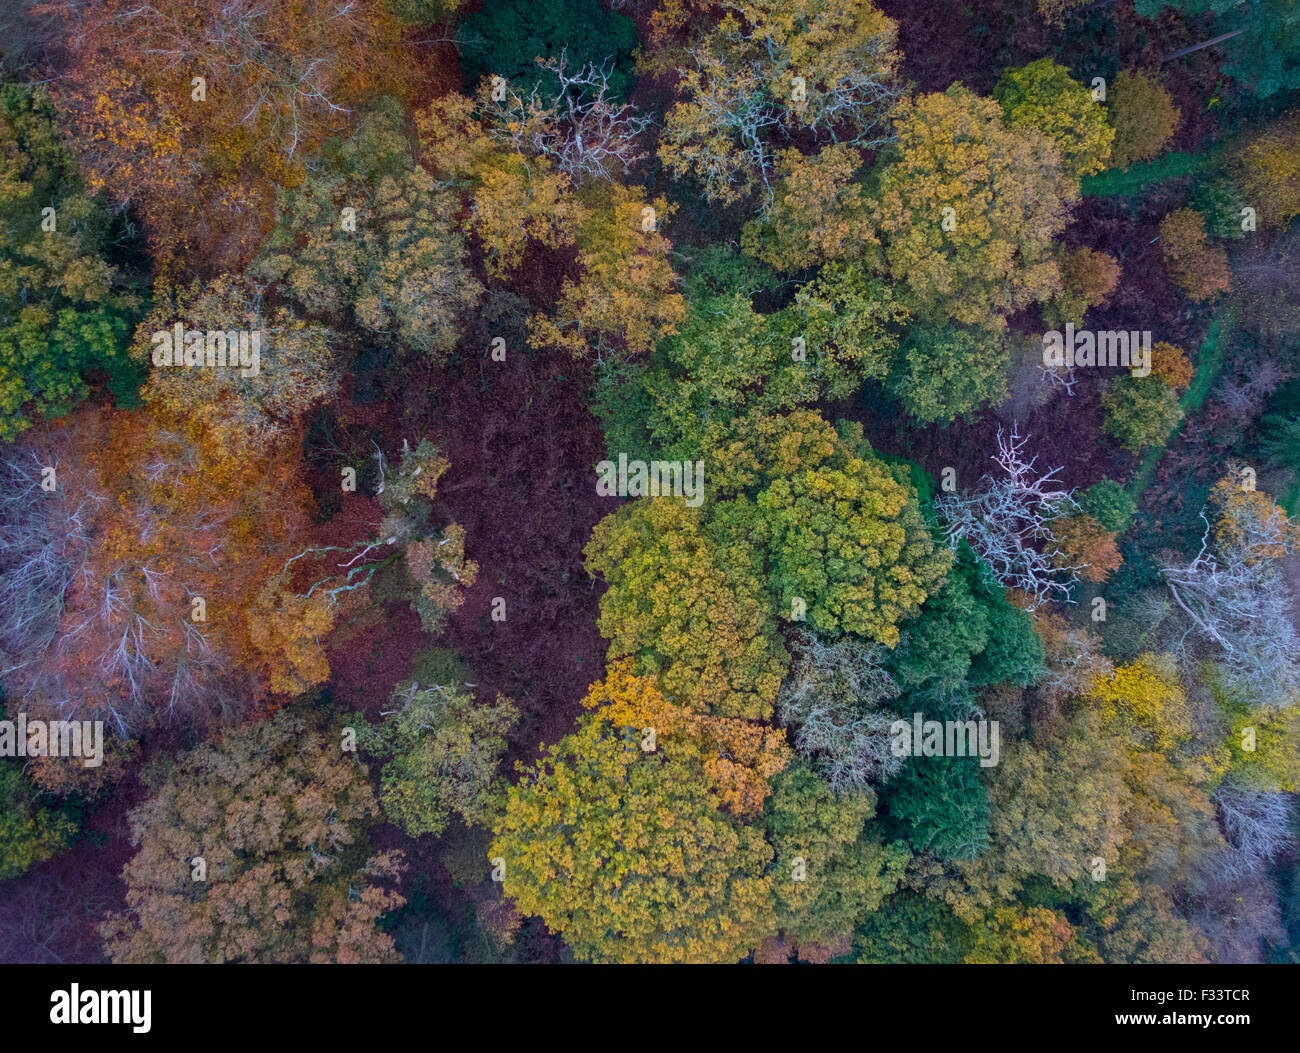 La couleur en automne, El Saladillo Bois Norfolk Wildlife Trust Réserver North Norfolk. Simo est un ancien bois avec quelques chênes tho Banque D'Images